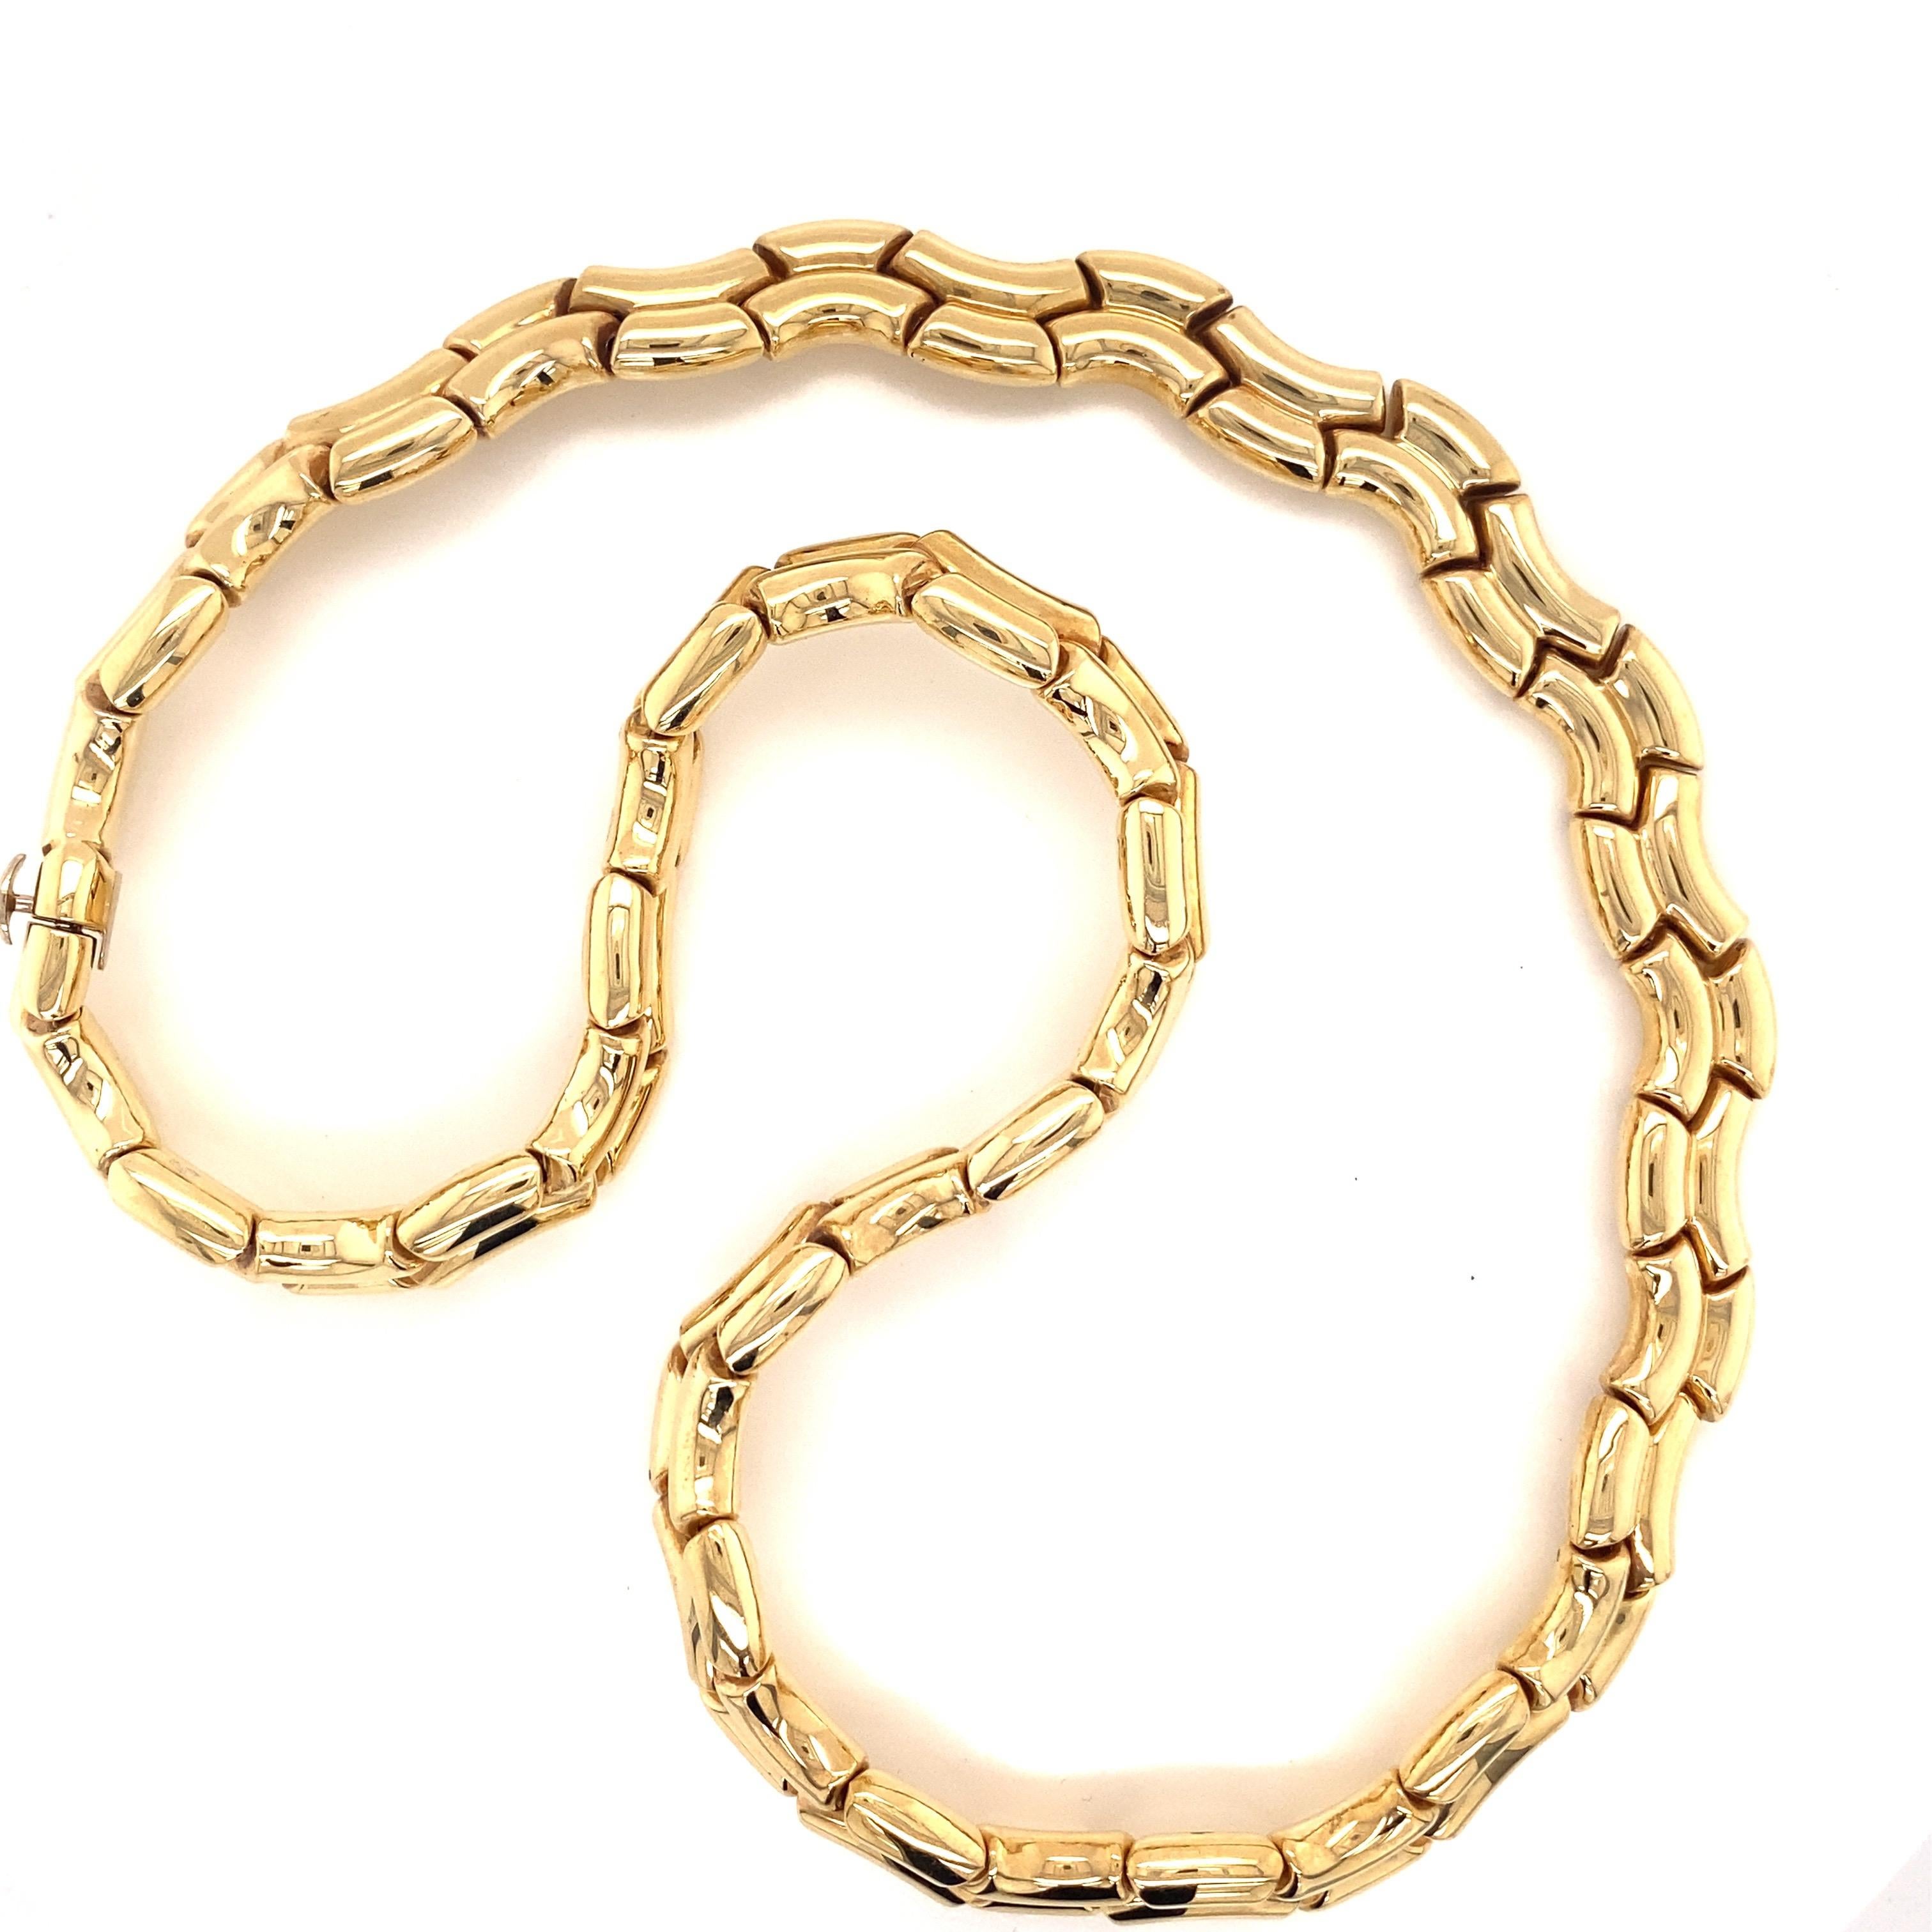 Vintage 1980's 14K Gelbgold italienischen Makkaroni Halskette - Die italienische Halskette hat eine doppelte breite Makkaroni Design Link, der 8,2 mm breit und 16 cm lang ist. Die Halskette hat einen verdeckten Verschluss und wiegt 40,9 Gramm. 